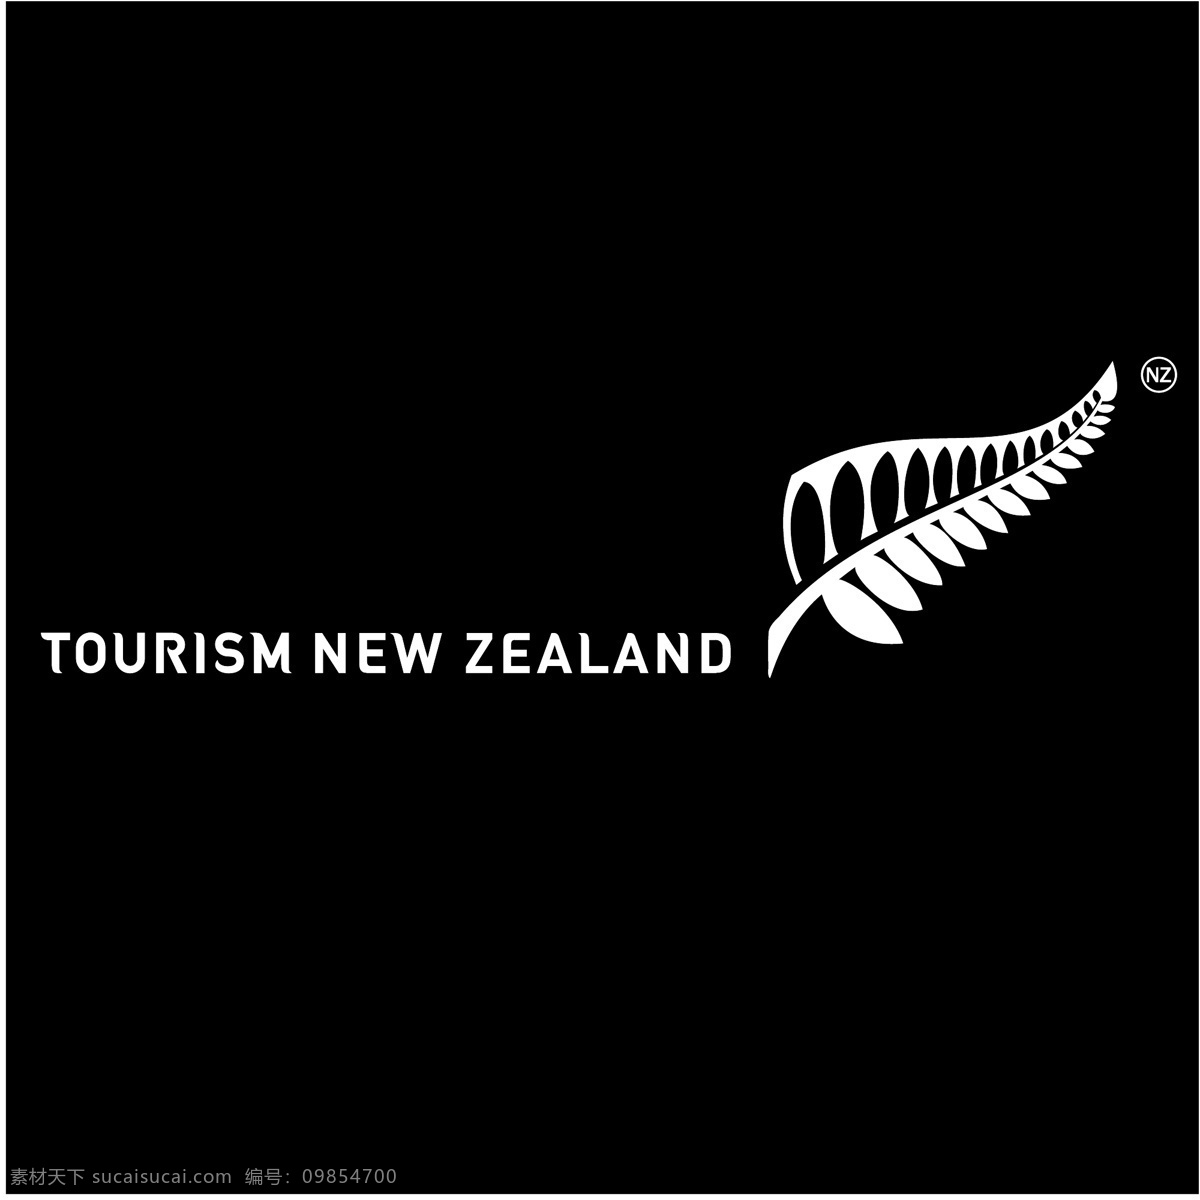 新西兰 旅游 免费 标识 psd源文件 logo设计